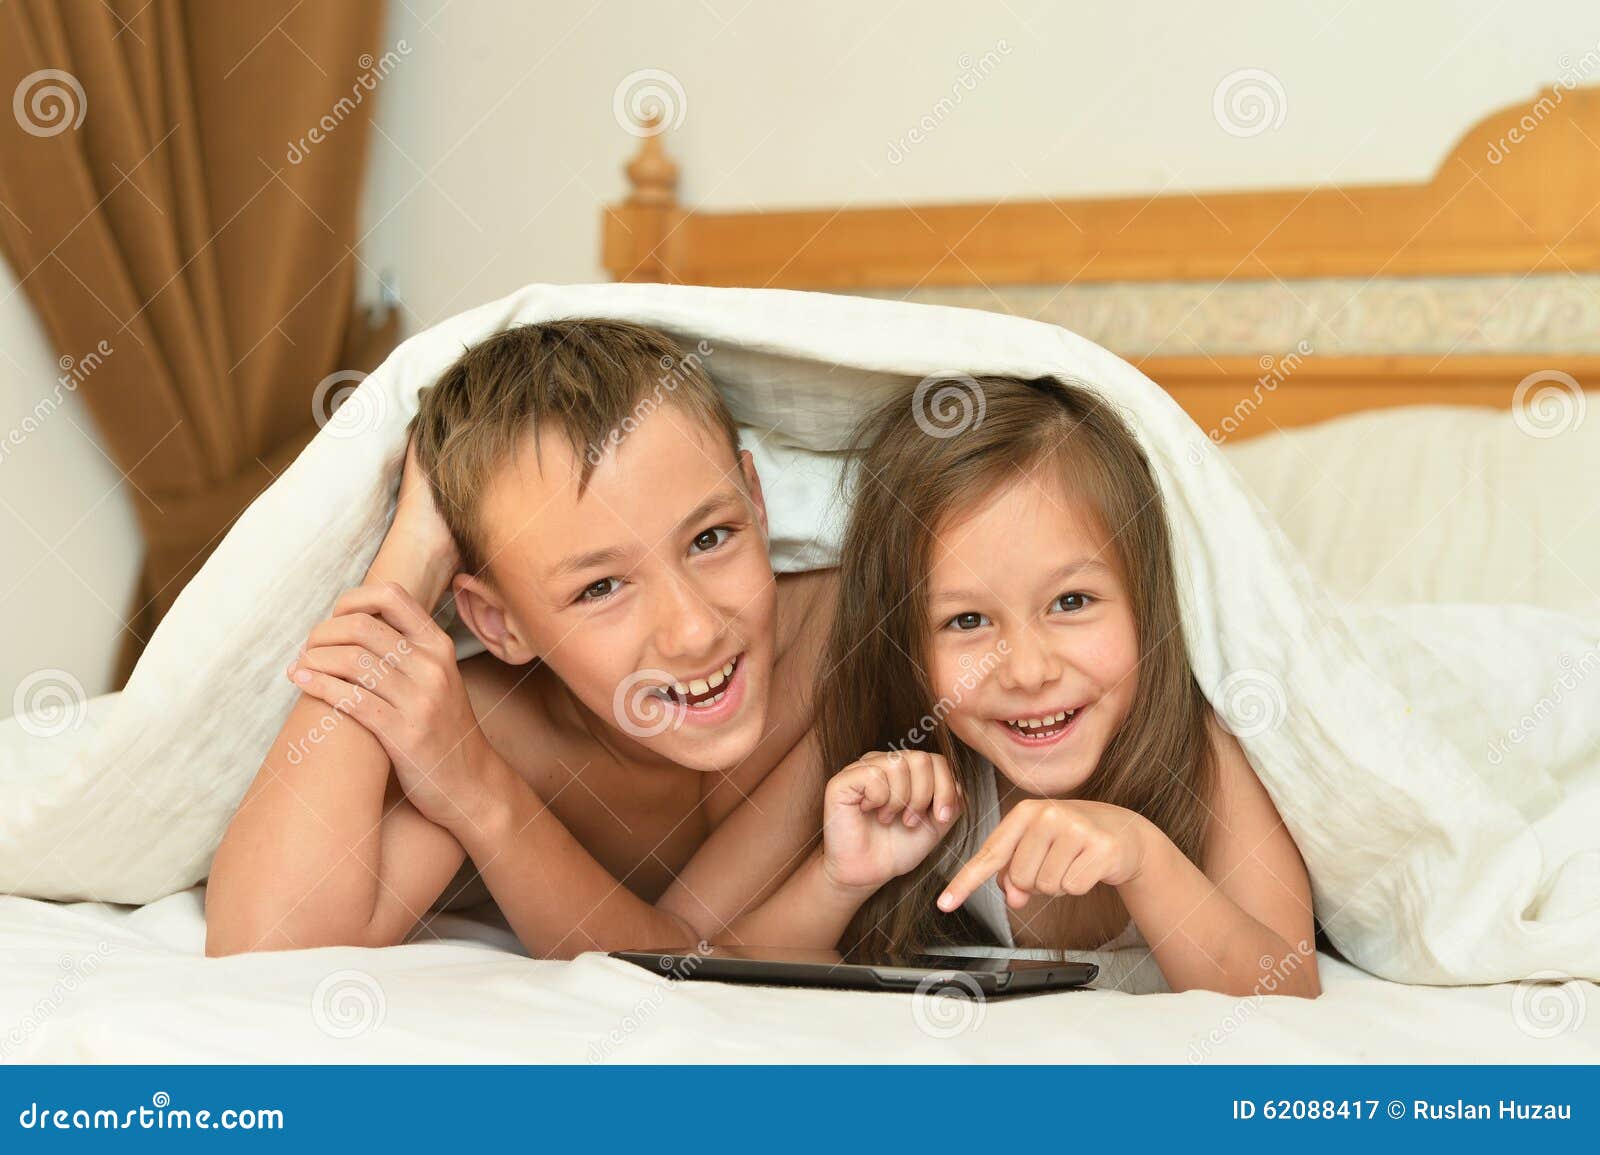 Баня брат сестра рассказы. Брат с сестрой играются на кровати. Брат с сестрой занимаются этим на кровати. Ноутбук у которого сестра и брат. Брат сел рядом с сестрой на кровать.